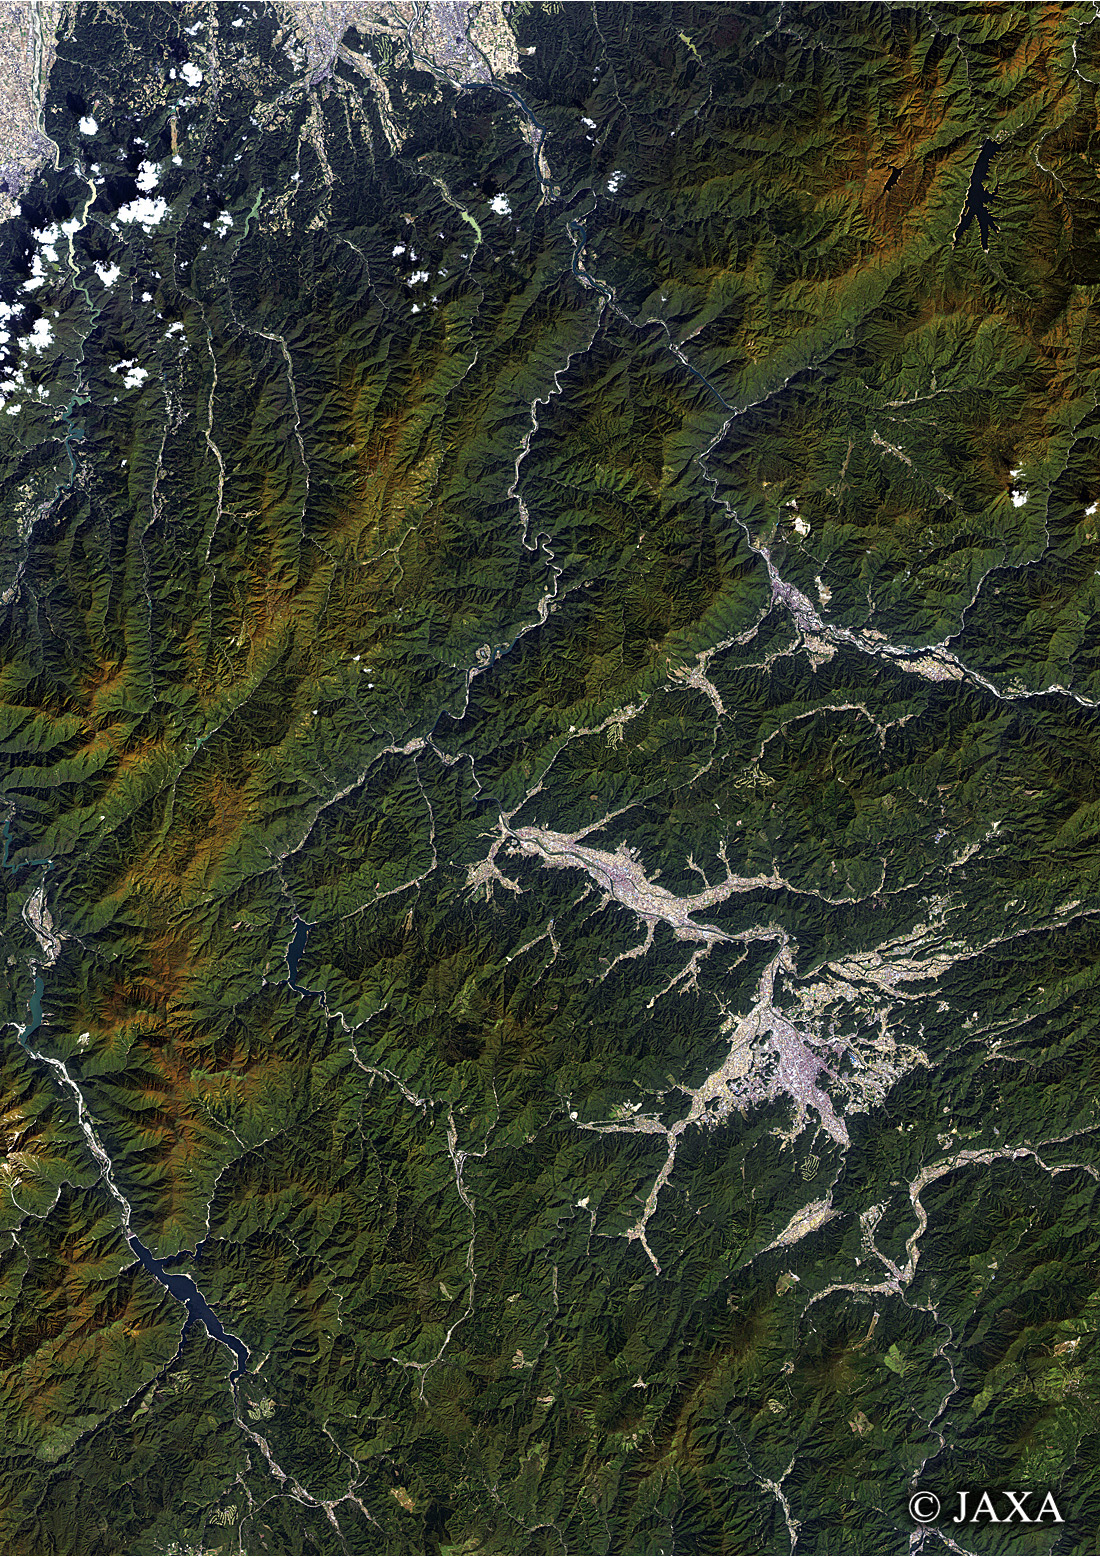 だいちから見た日本の都市 飛騨市、高山市周辺:衛星画像